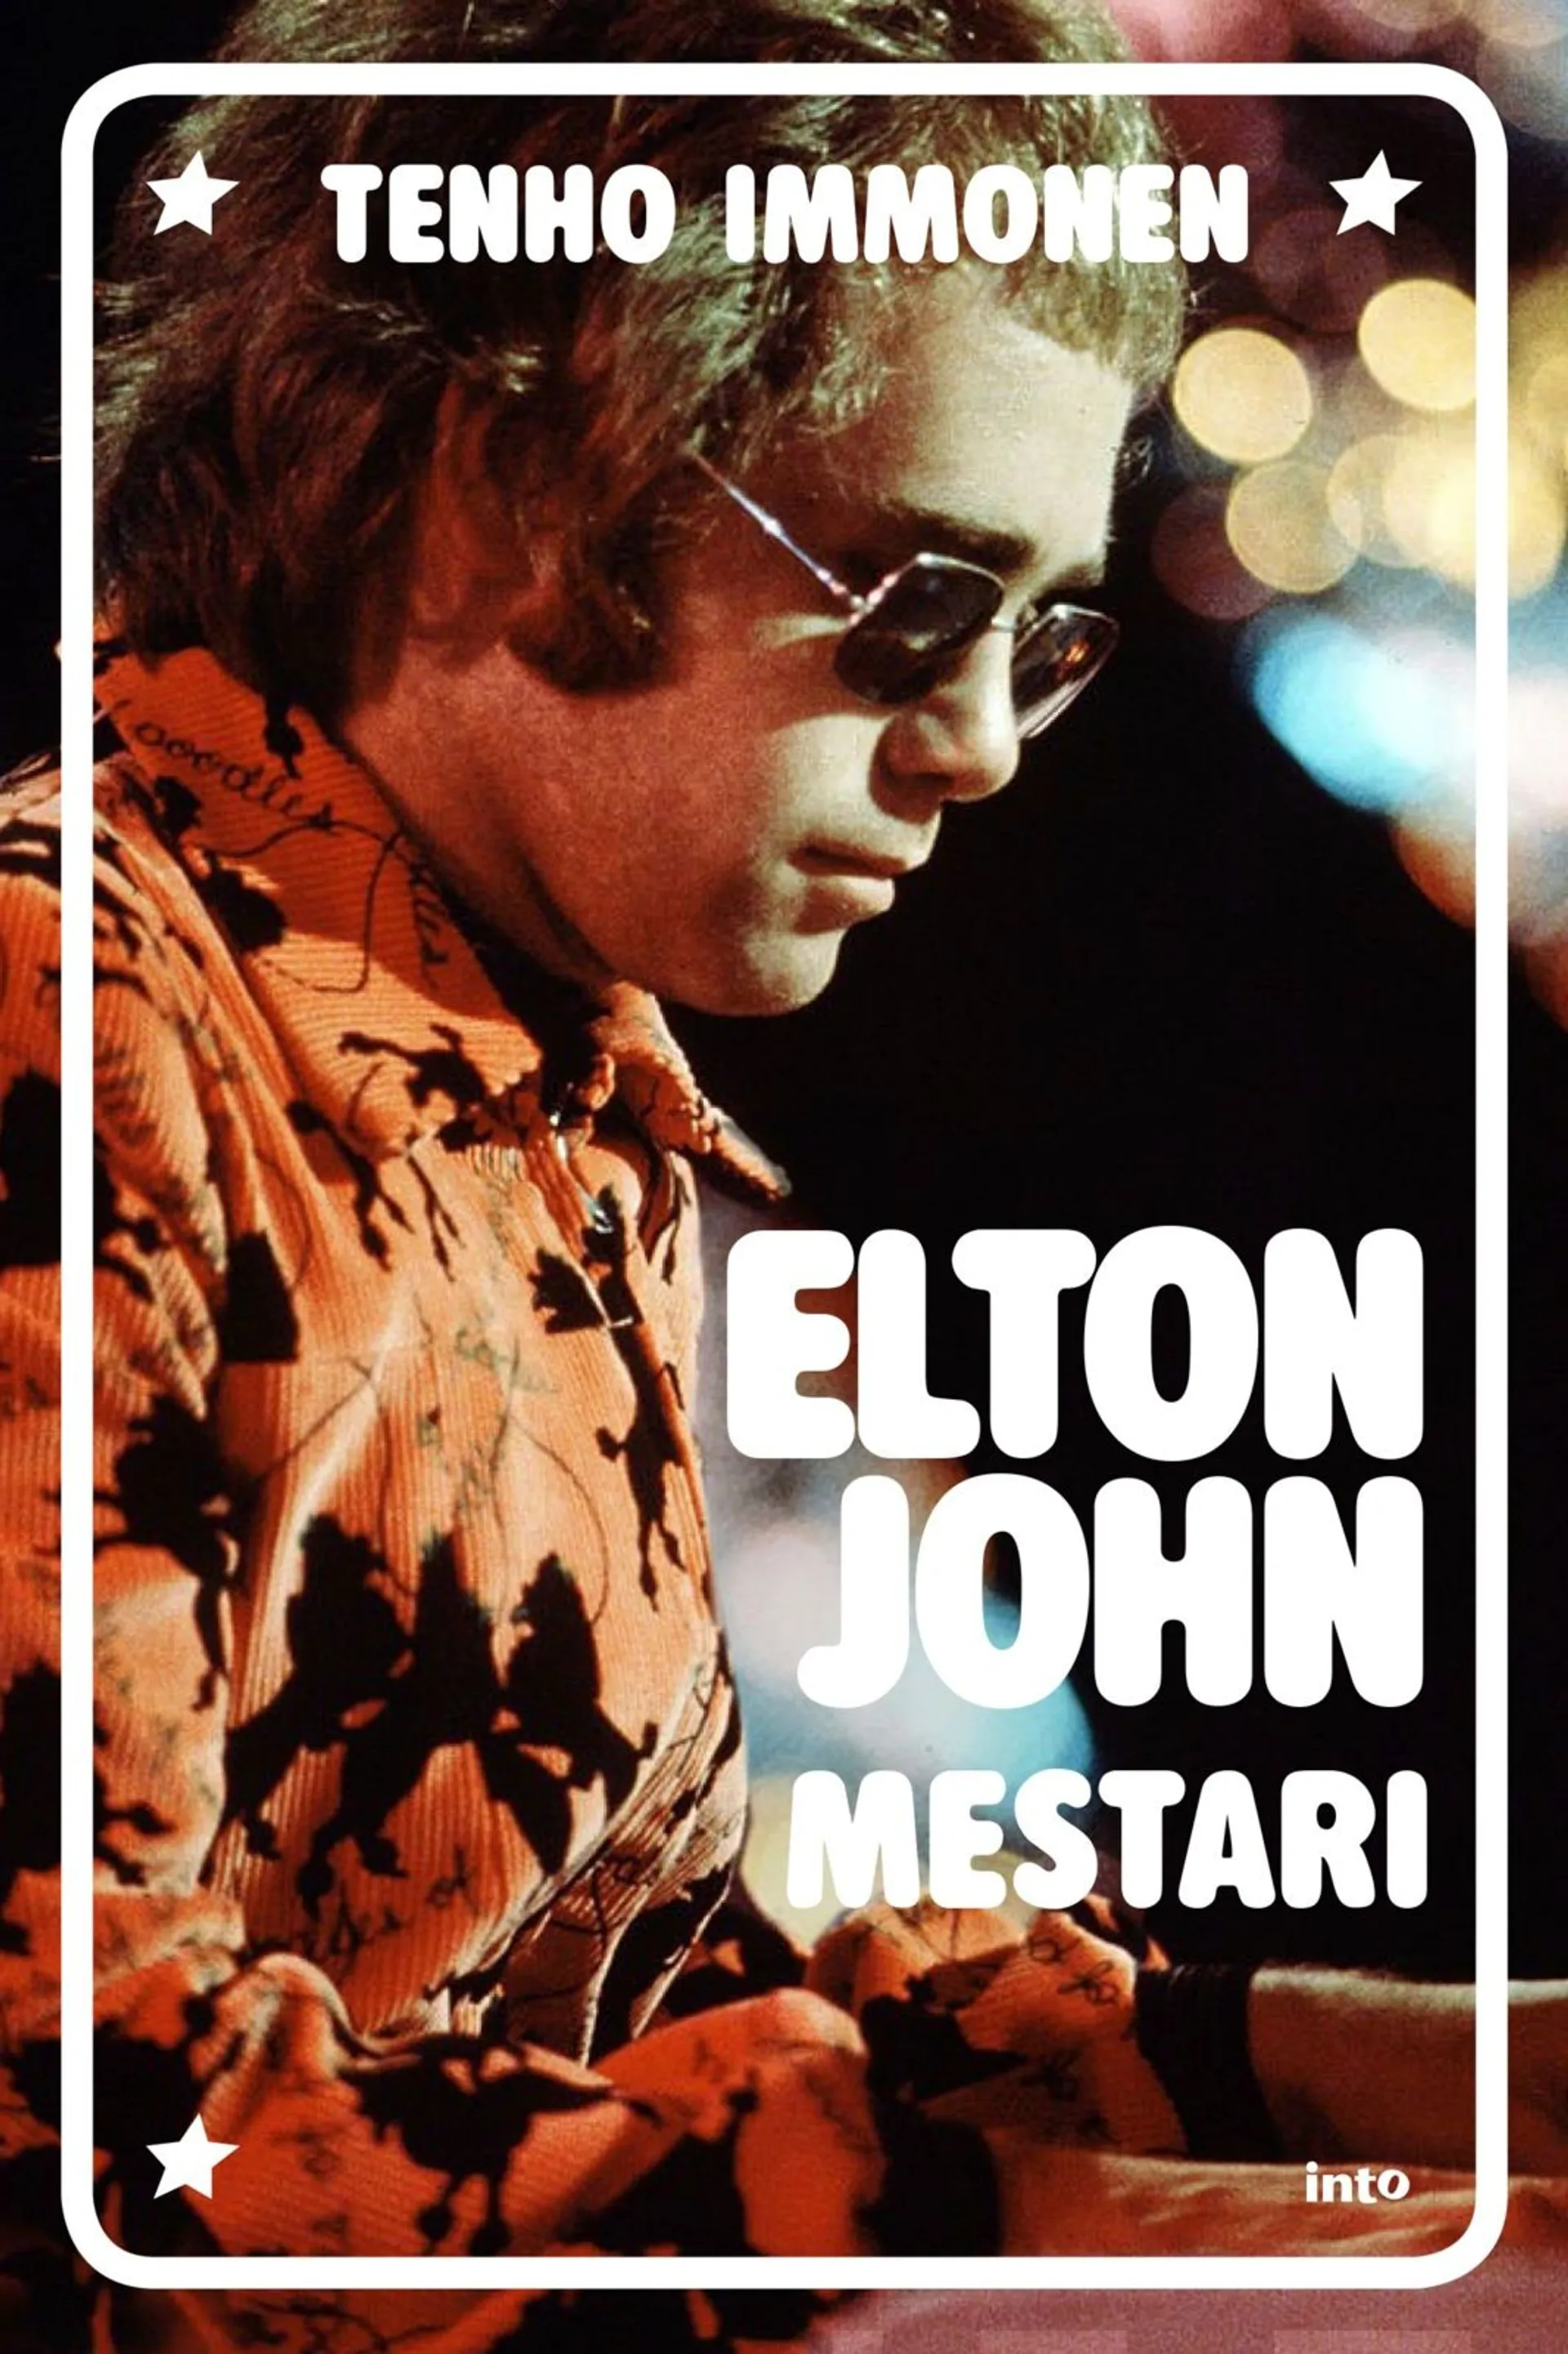 Immonen, Elton John - Mestari